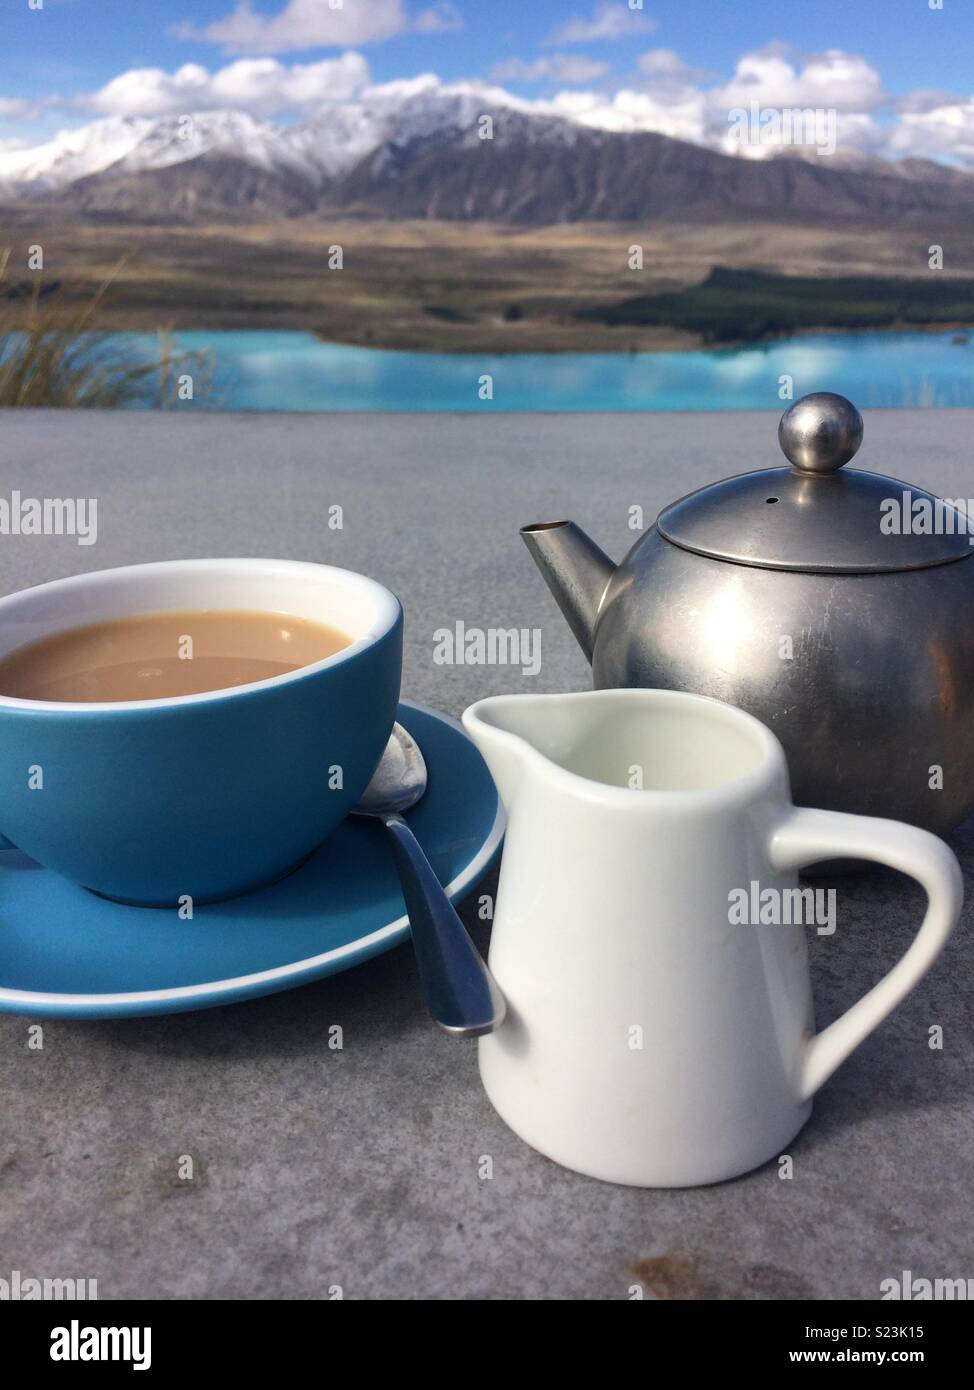 Tea and mountains at lake tekapo, New Zealand Stock Photo